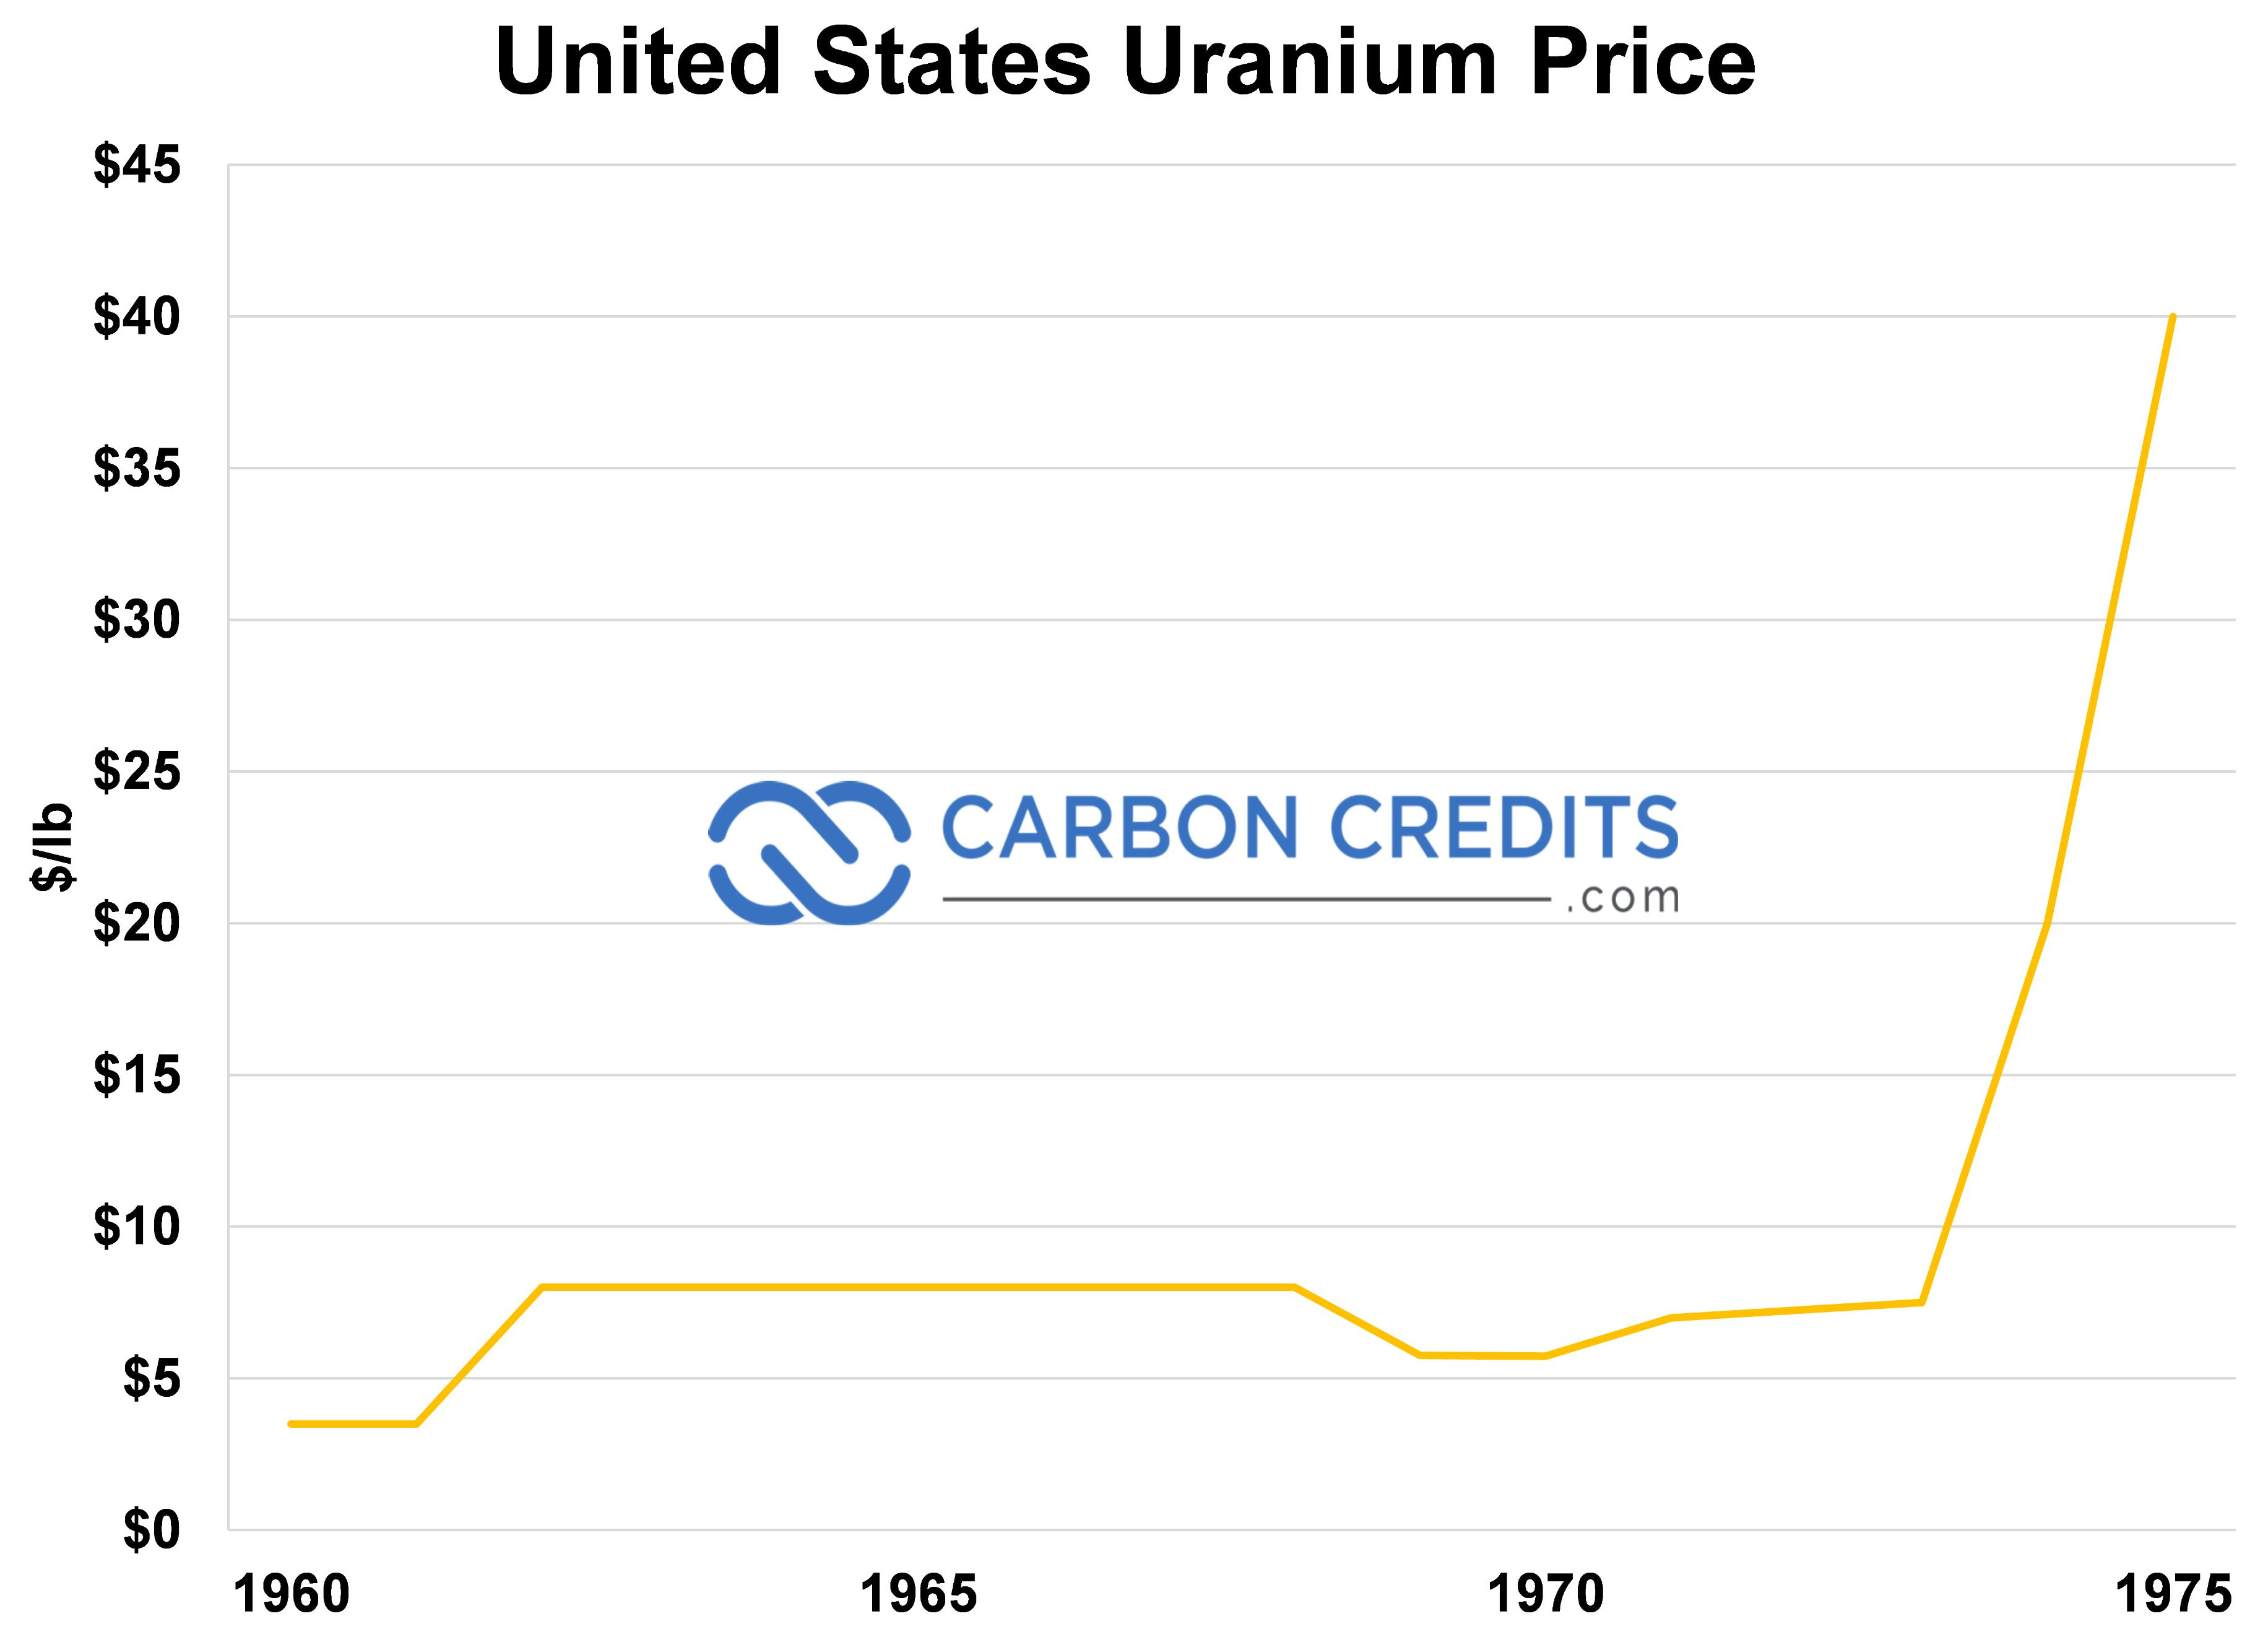 een lijngrafiek die de prijs van koolstofkredieten en de uraniumprijs in de Verenigde Staten weergeeft